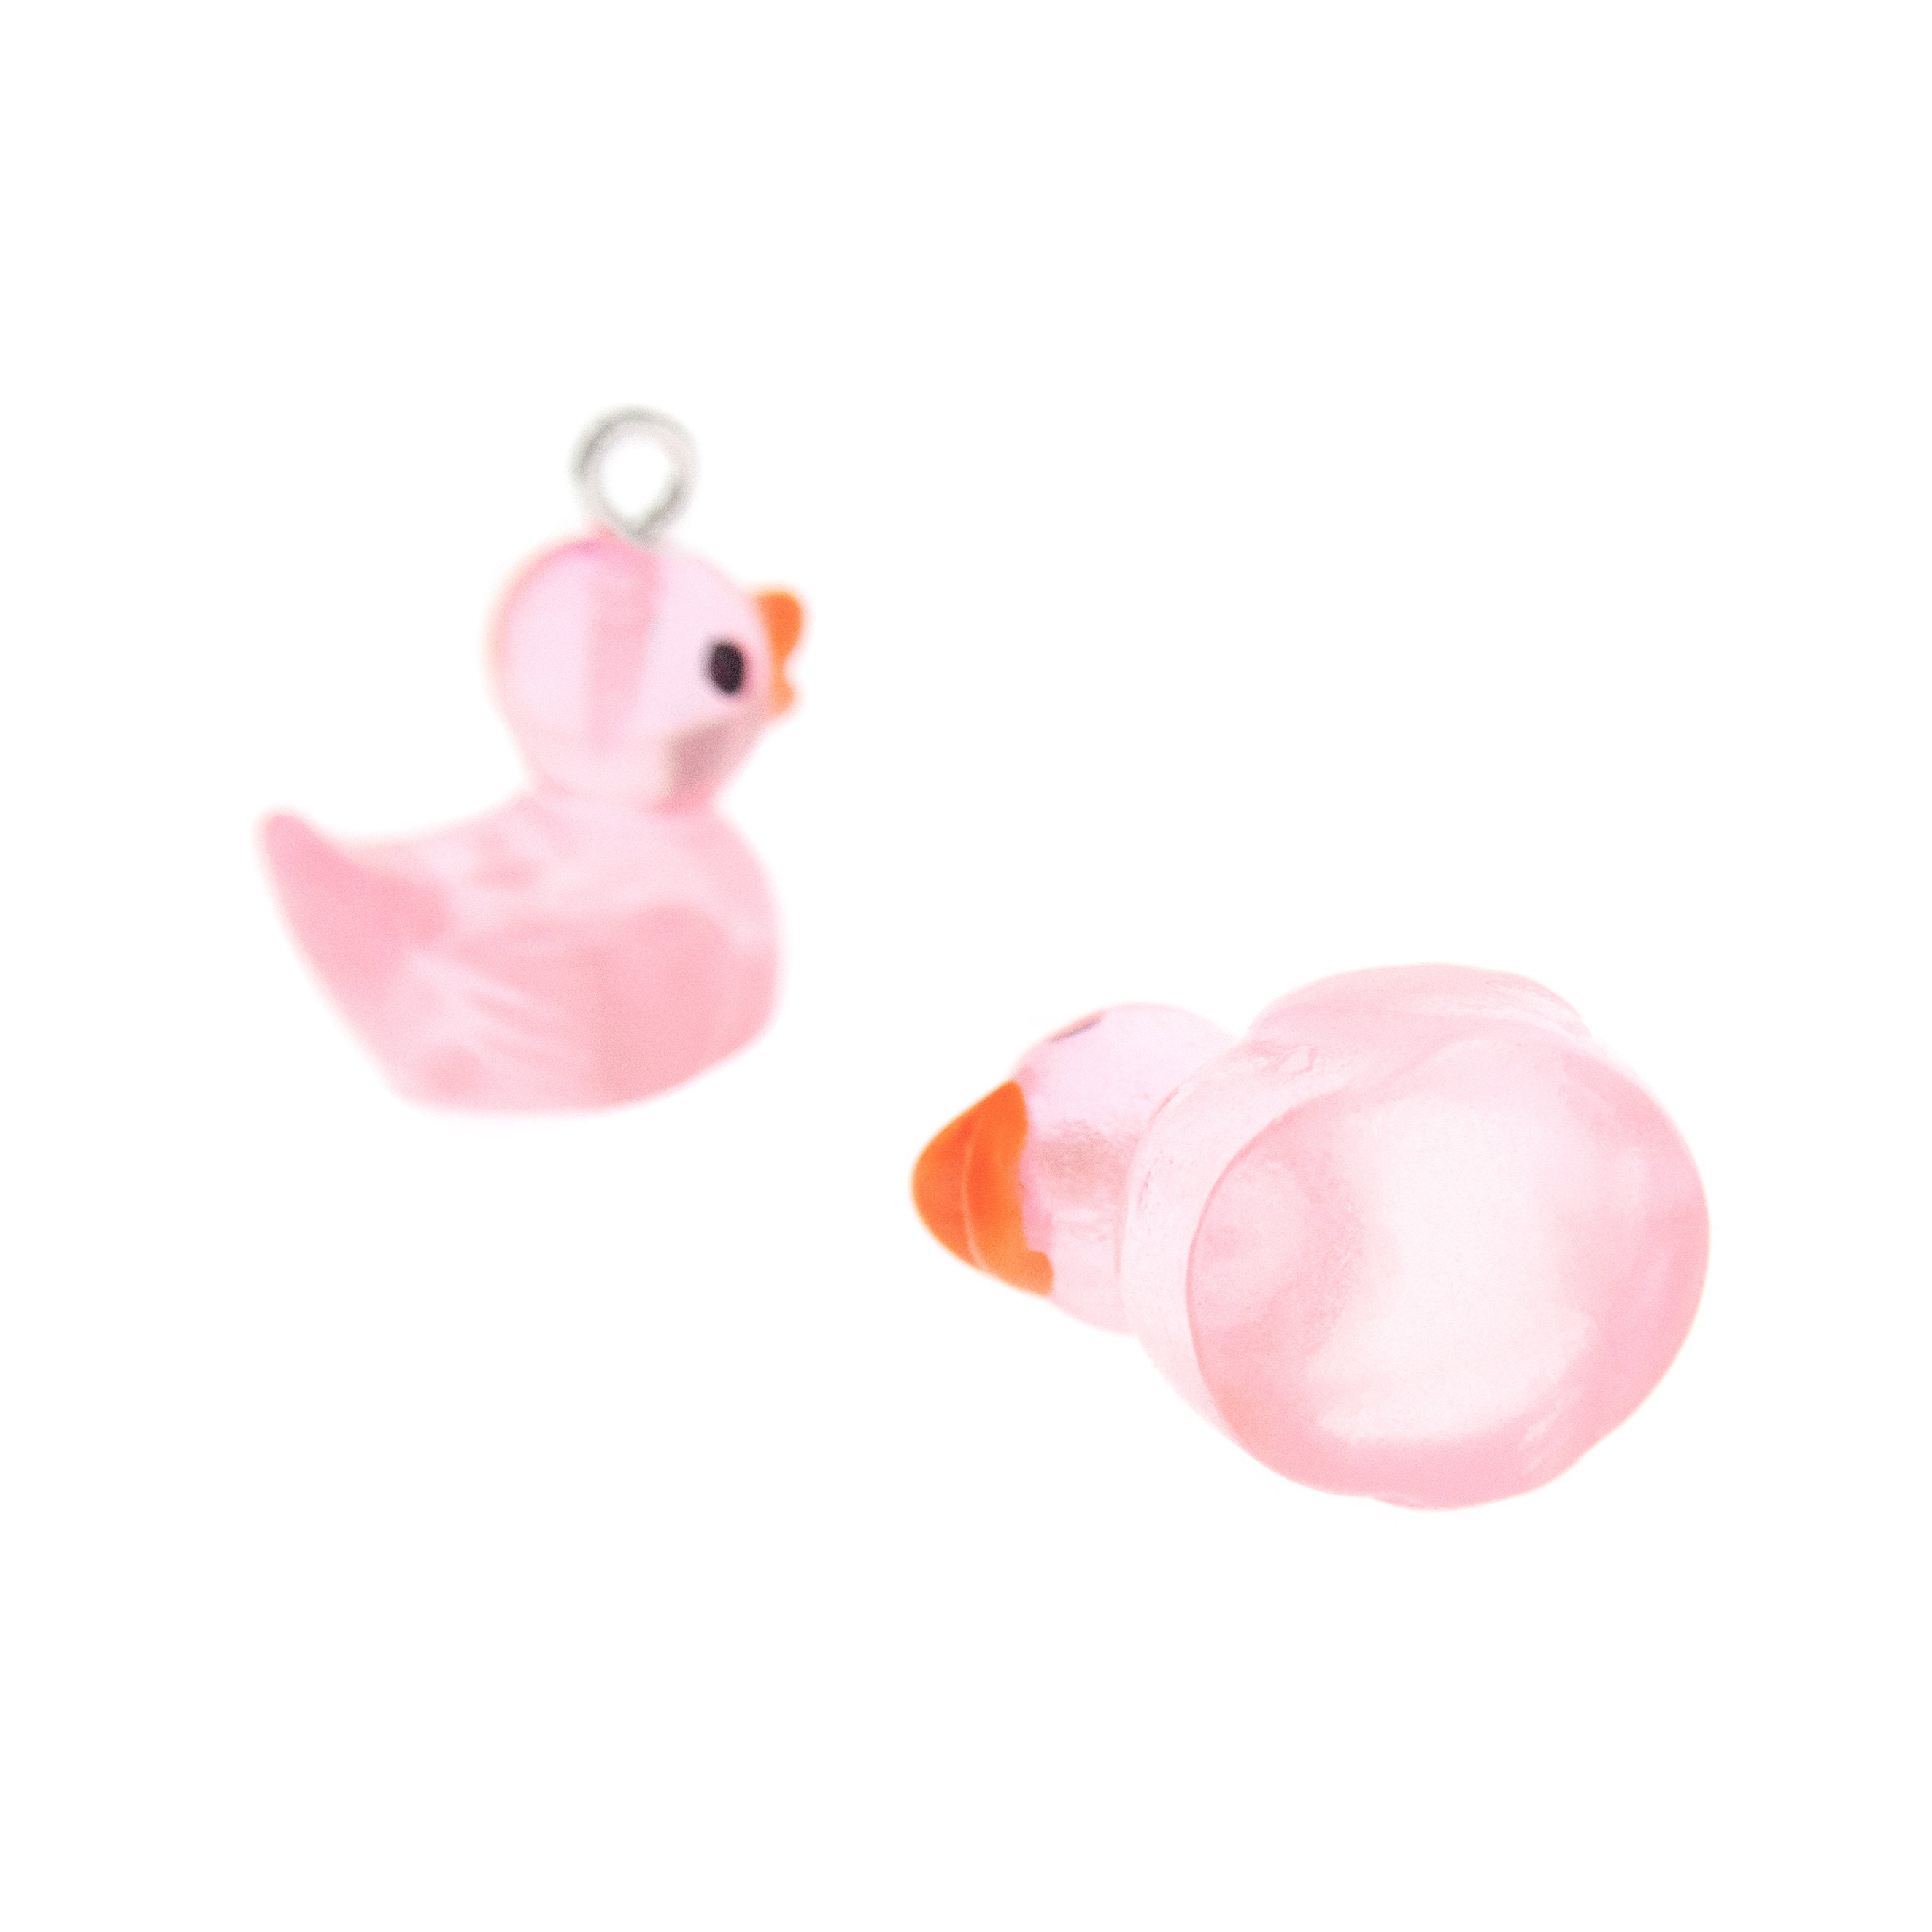 Pink Duckie Earrings. Rubber Duck Programming